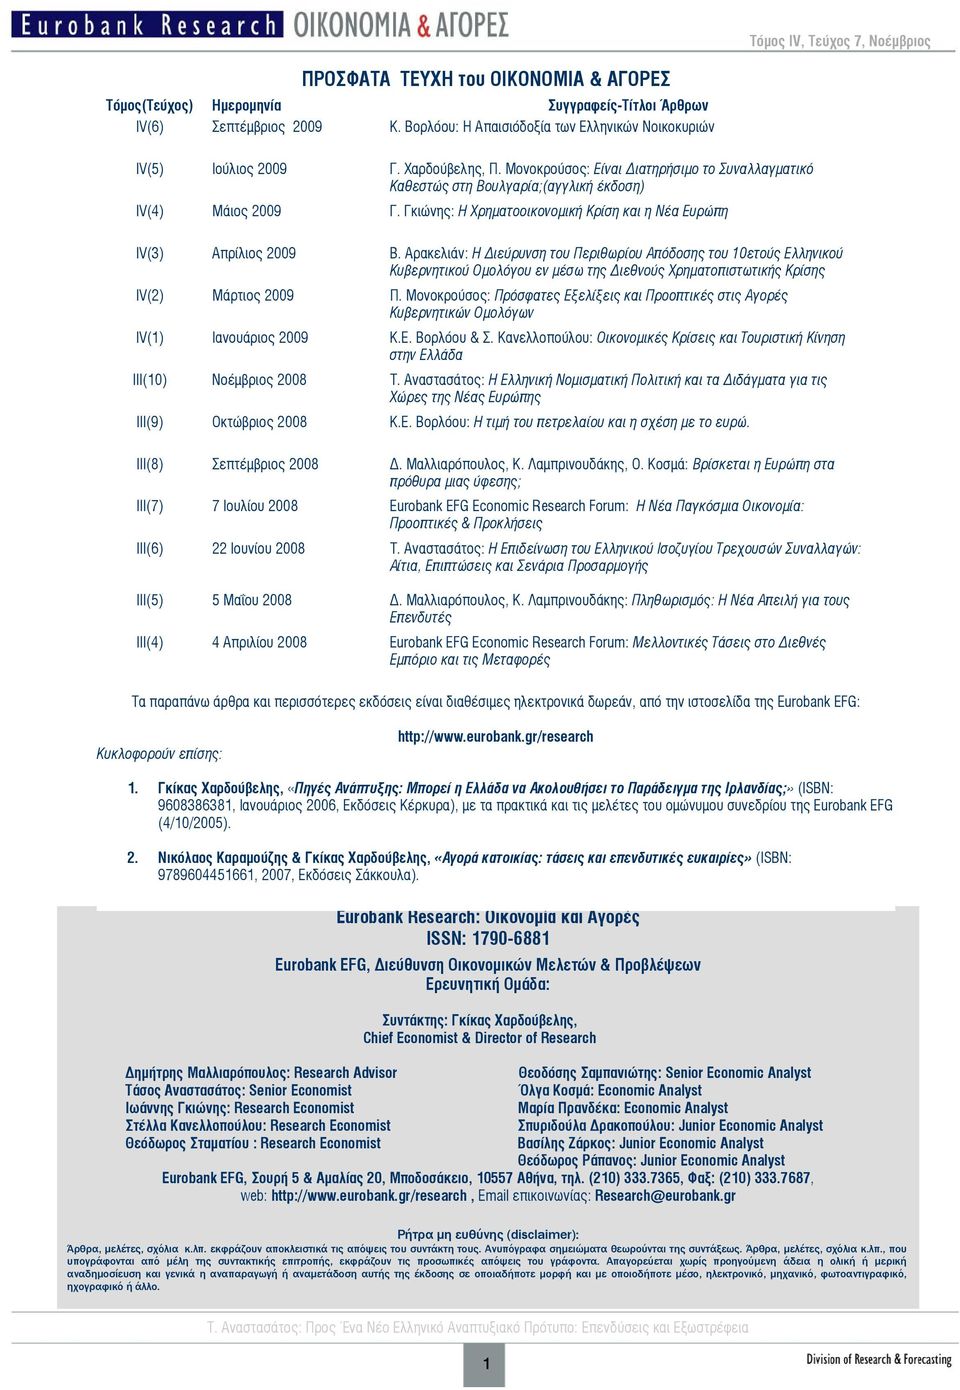 Αρακελιάν: Η ιεύρυνση του Περιθωρίου Απόδοσης του 10ετούς Ελληνικού Κυβερνητικού Ομολόγου εν μέσω της ιεθνούς Χρηματοπιστωτικής Κρίσης IV(2) Μάρτιος 2009 Π.